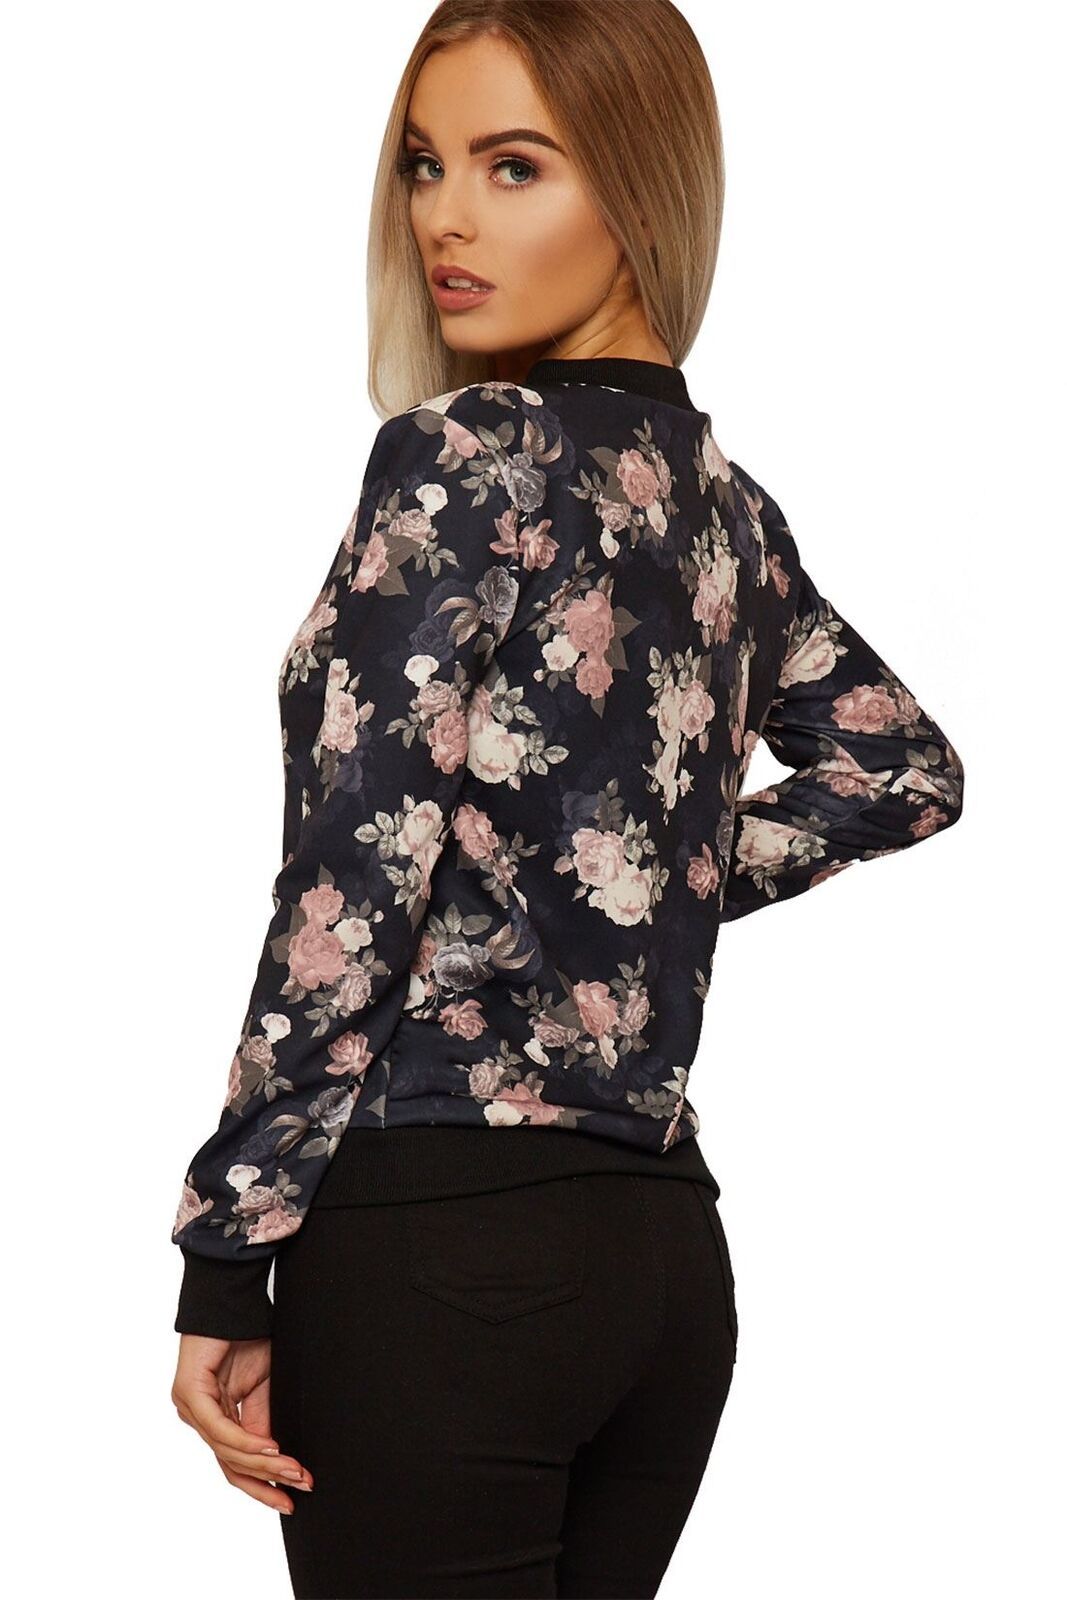 Download Floral Bomber Jacket Ladies Long Sleeves Rose Print Zip Up ...